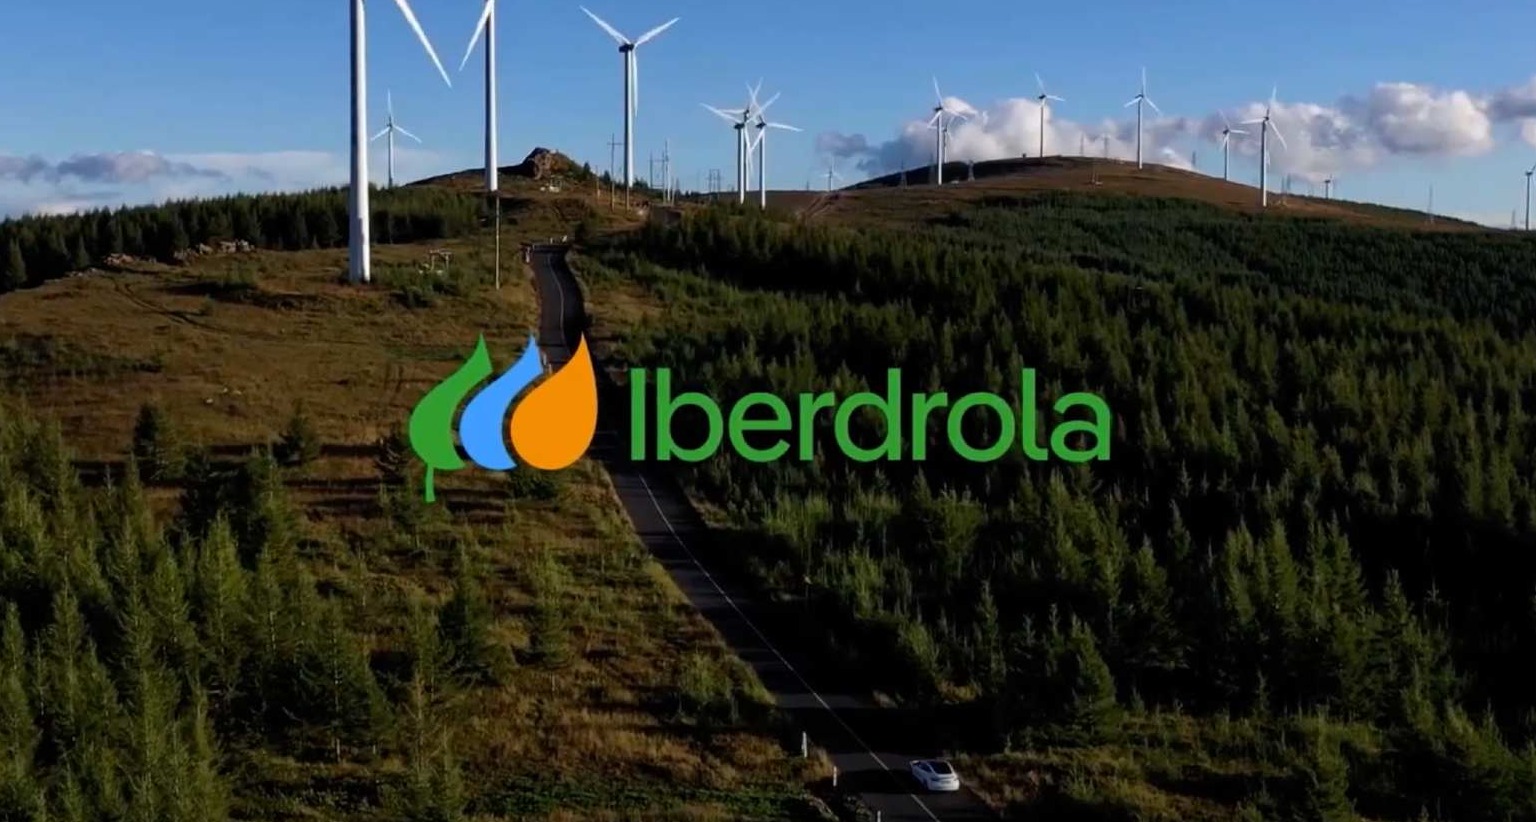 Iberdrola actualiza su logotipo con cambios menores y buscando reforzar su vinculación a la sostenibilidad